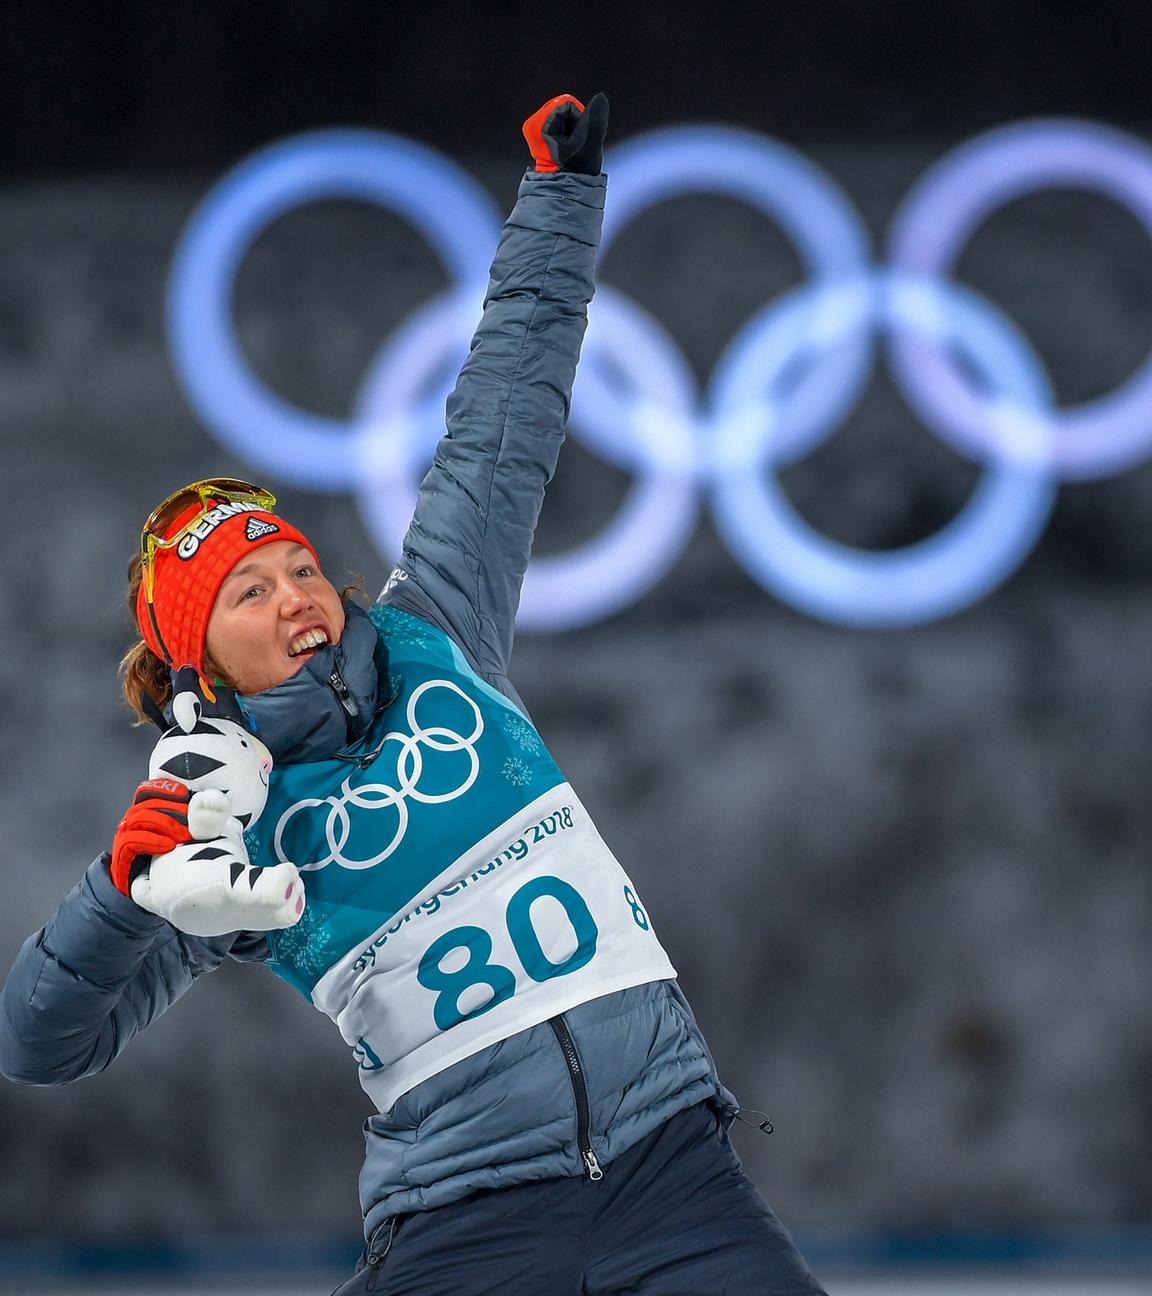 15.02.2018, Pyeongchang, Olympia, Biathlon: Laura Dahlmeier jubelt über ihre Bronzemedaille im Einzelrennen.